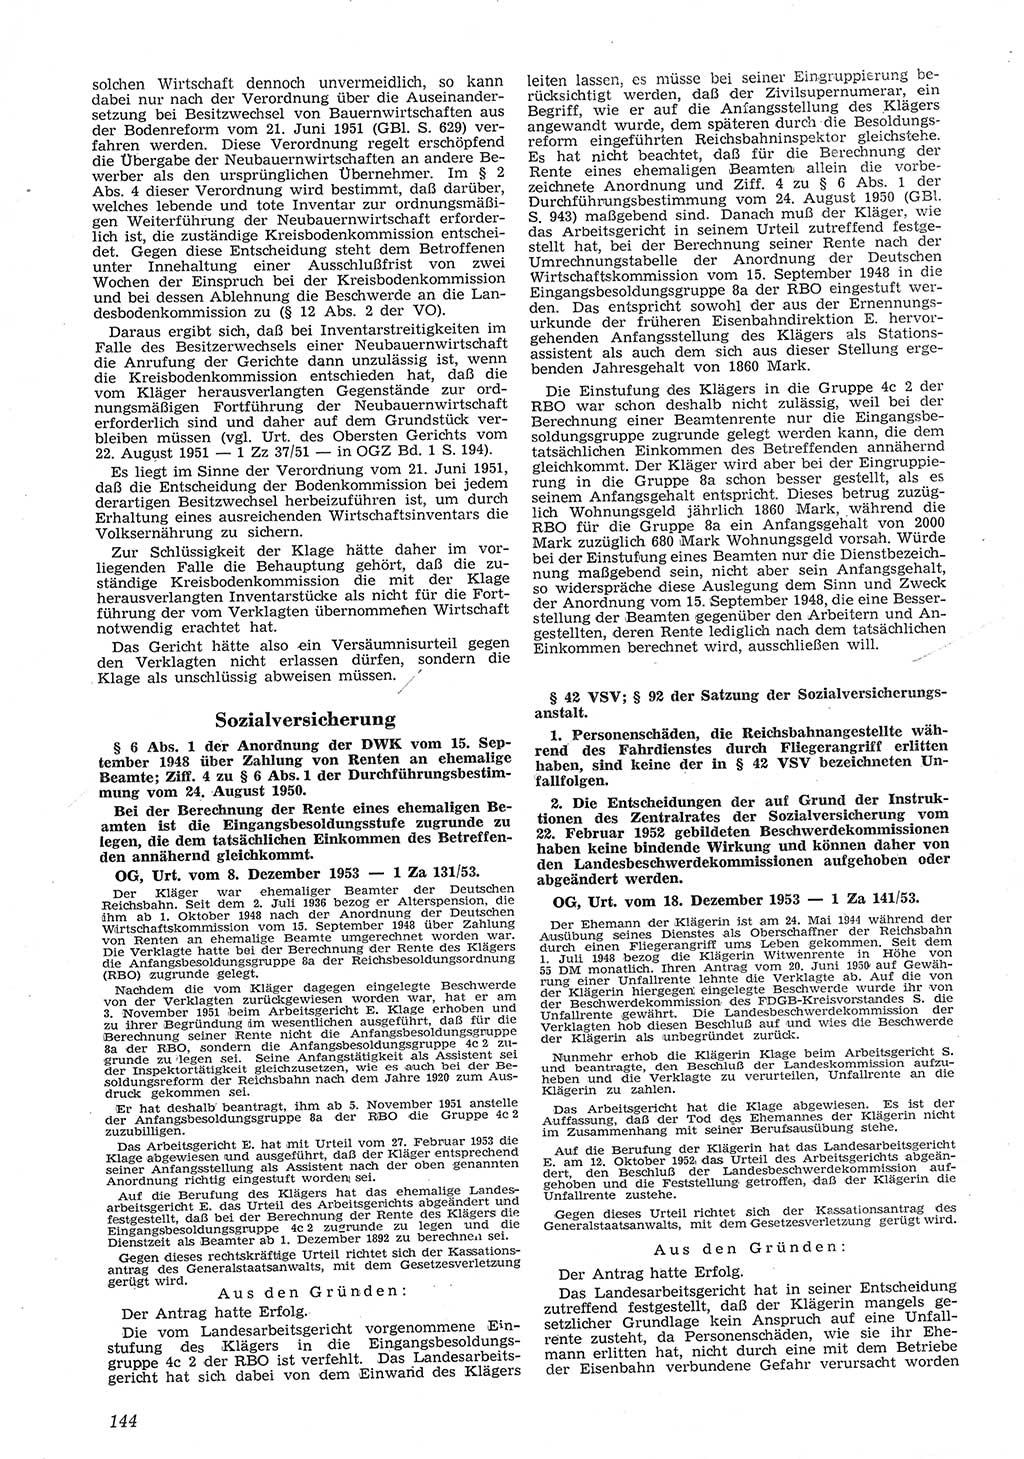 Neue Justiz (NJ), Zeitschrift für Recht und Rechtswissenschaft [Deutsche Demokratische Republik (DDR)], 8. Jahrgang 1954, Seite 144 (NJ DDR 1954, S. 144)